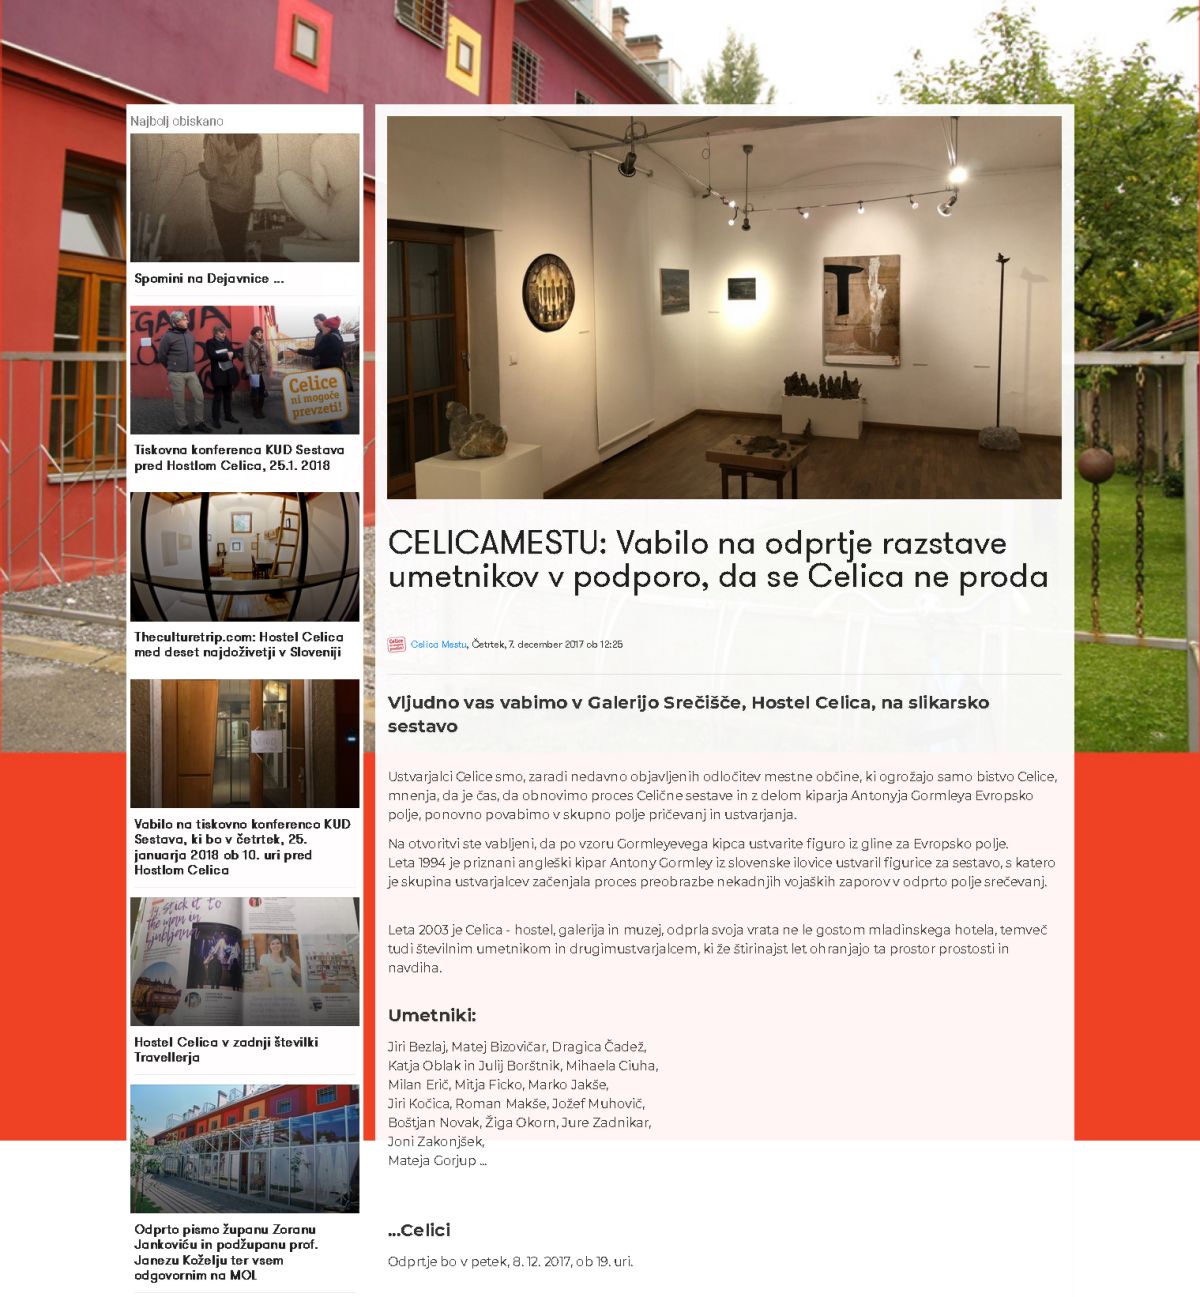 Celica to the city: UMETNIKI CELICI, exhibition of artists in support of the Srečišče Gallery, hostel Celica, Ljubljana, dec. 2017 in jan. 2018.